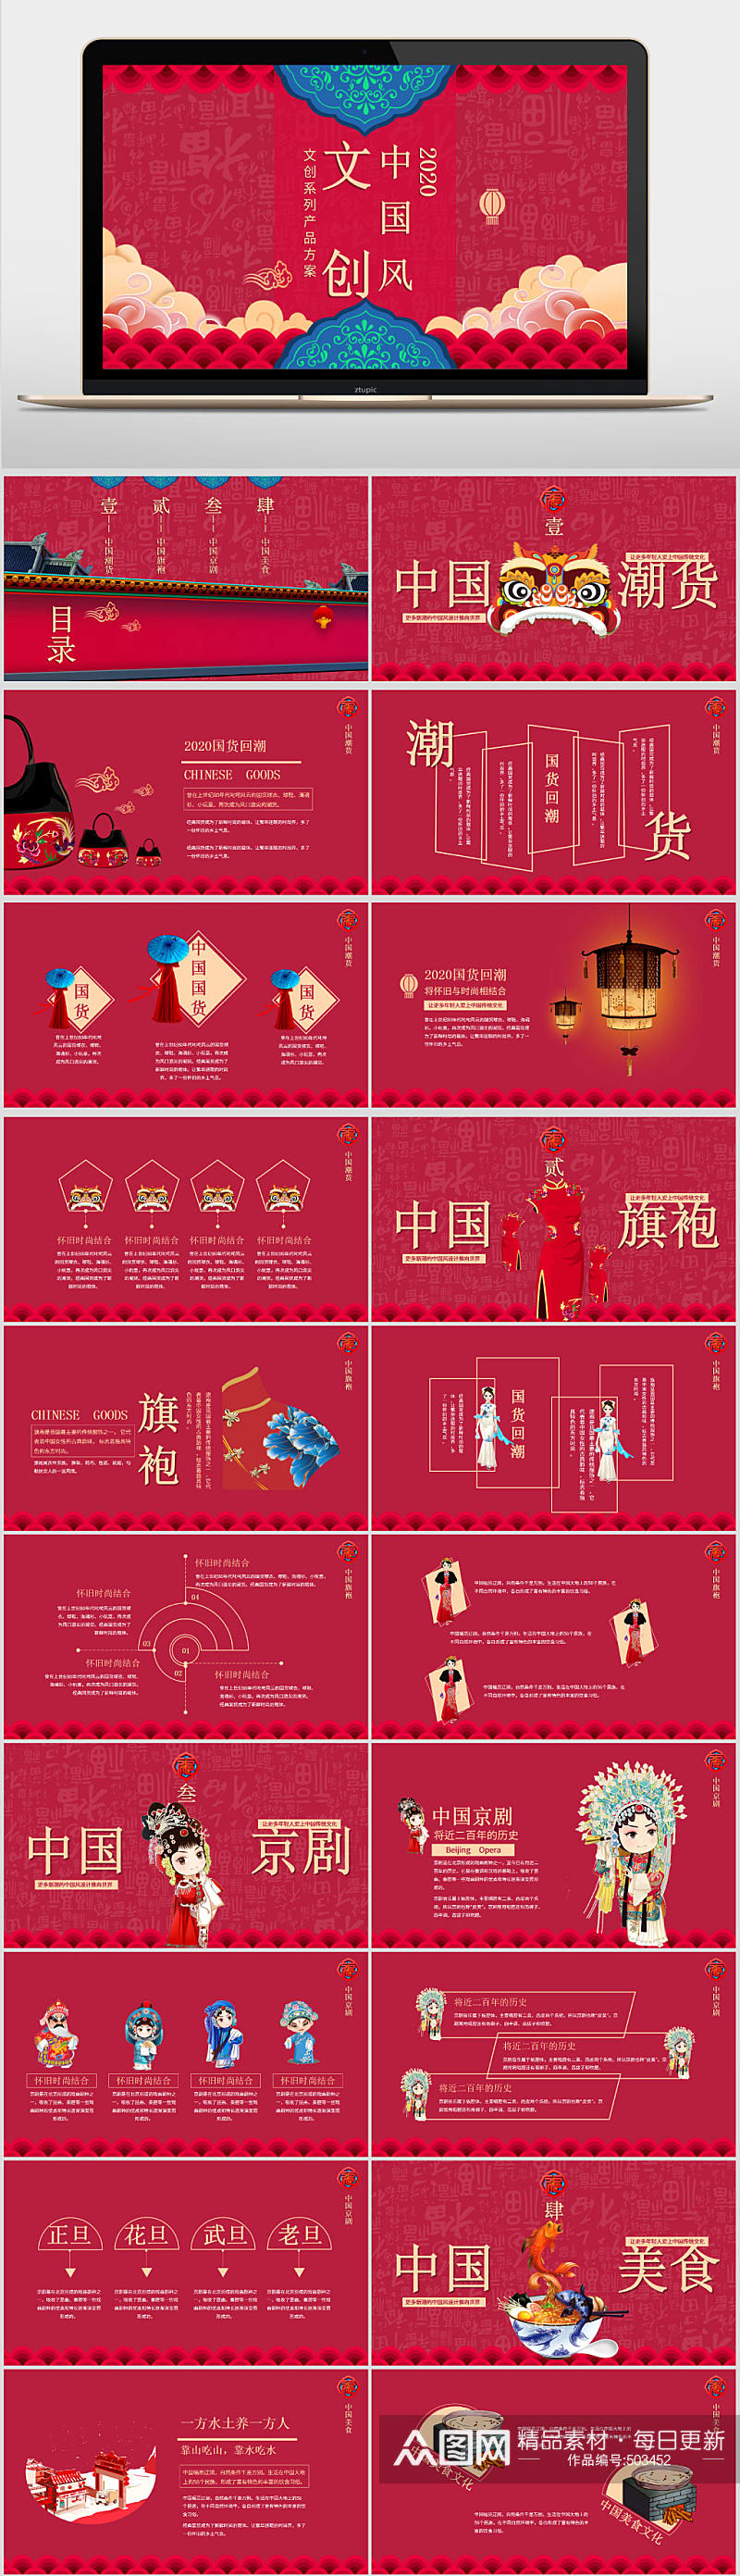 红色中国风文创产品介绍PPT模板素材